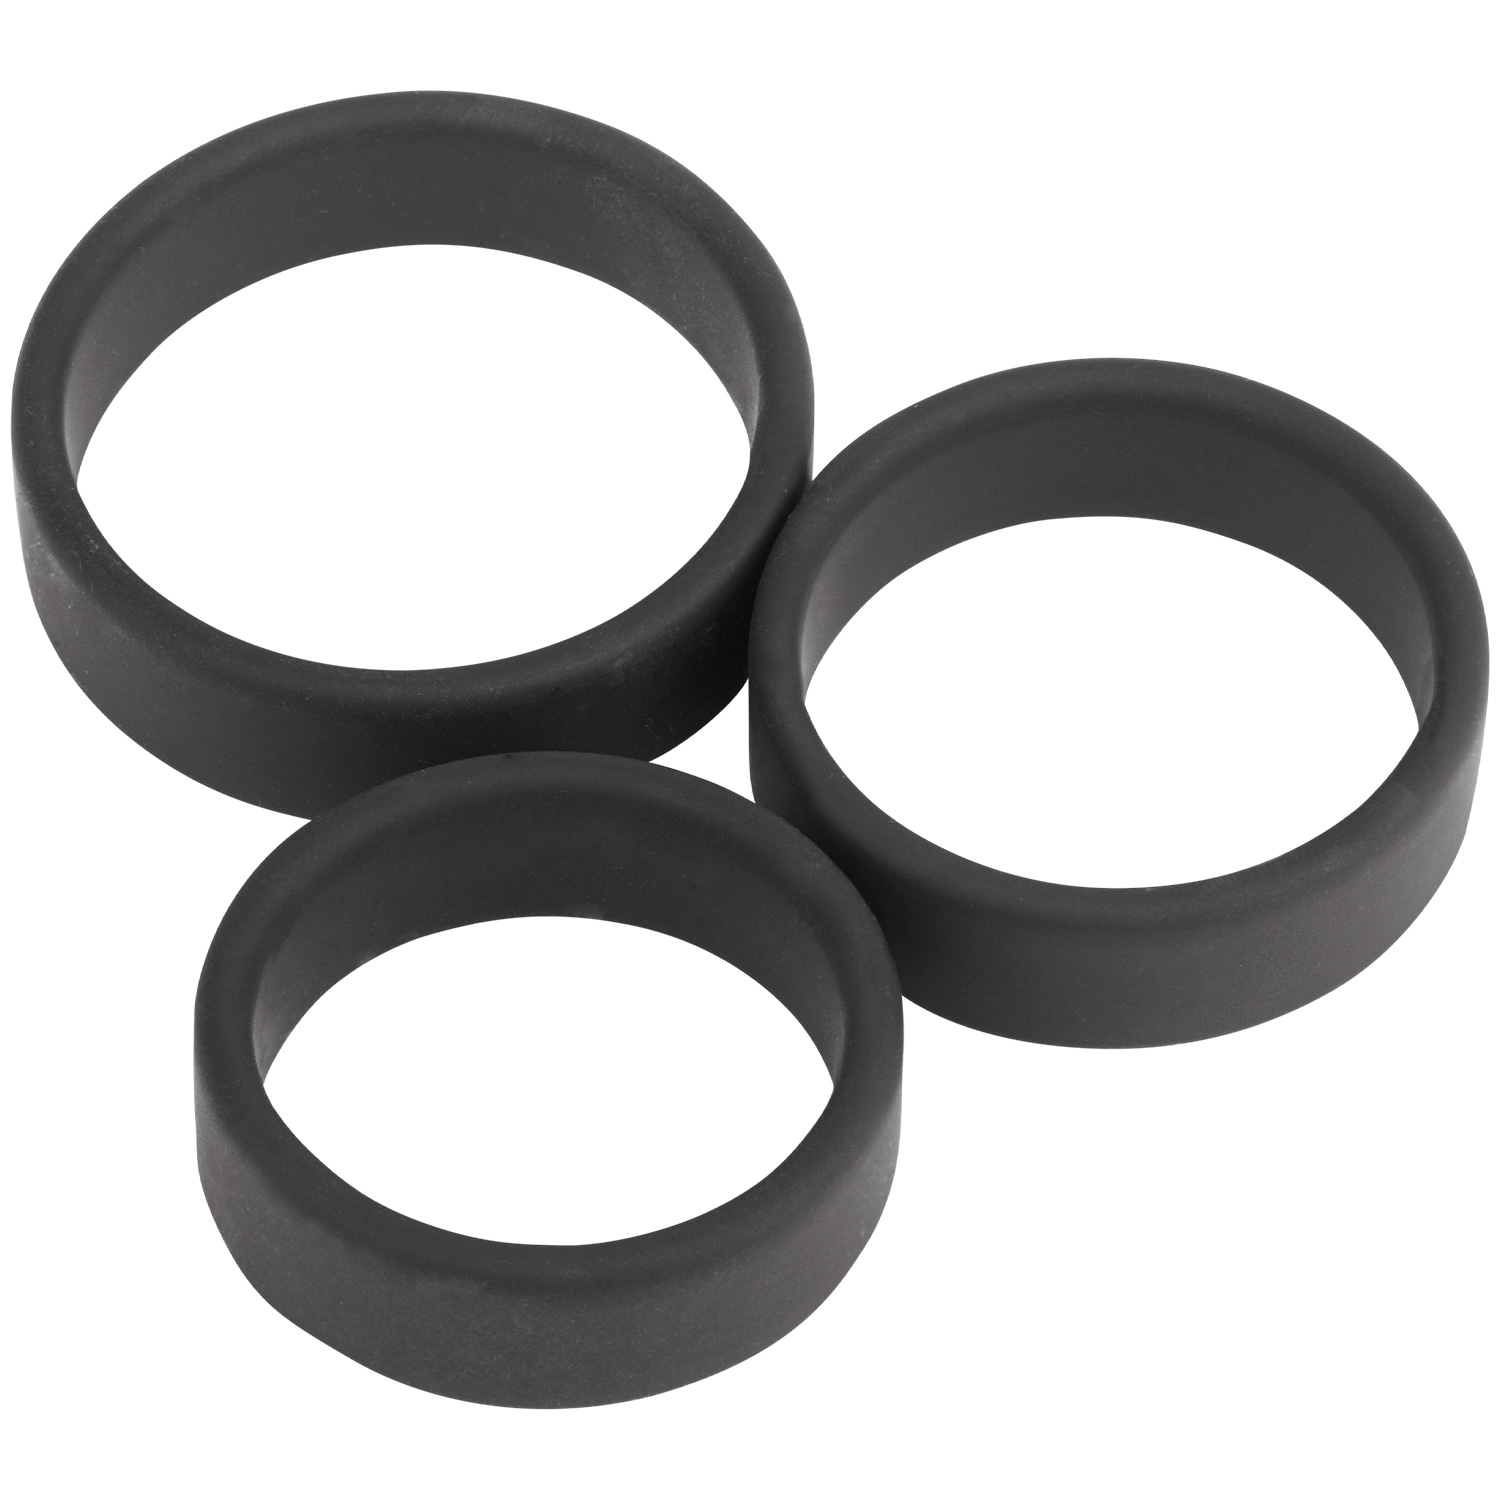 Sinful Ensemble de 3 anneaux masculins en silicone de qualité supérieure - Noir